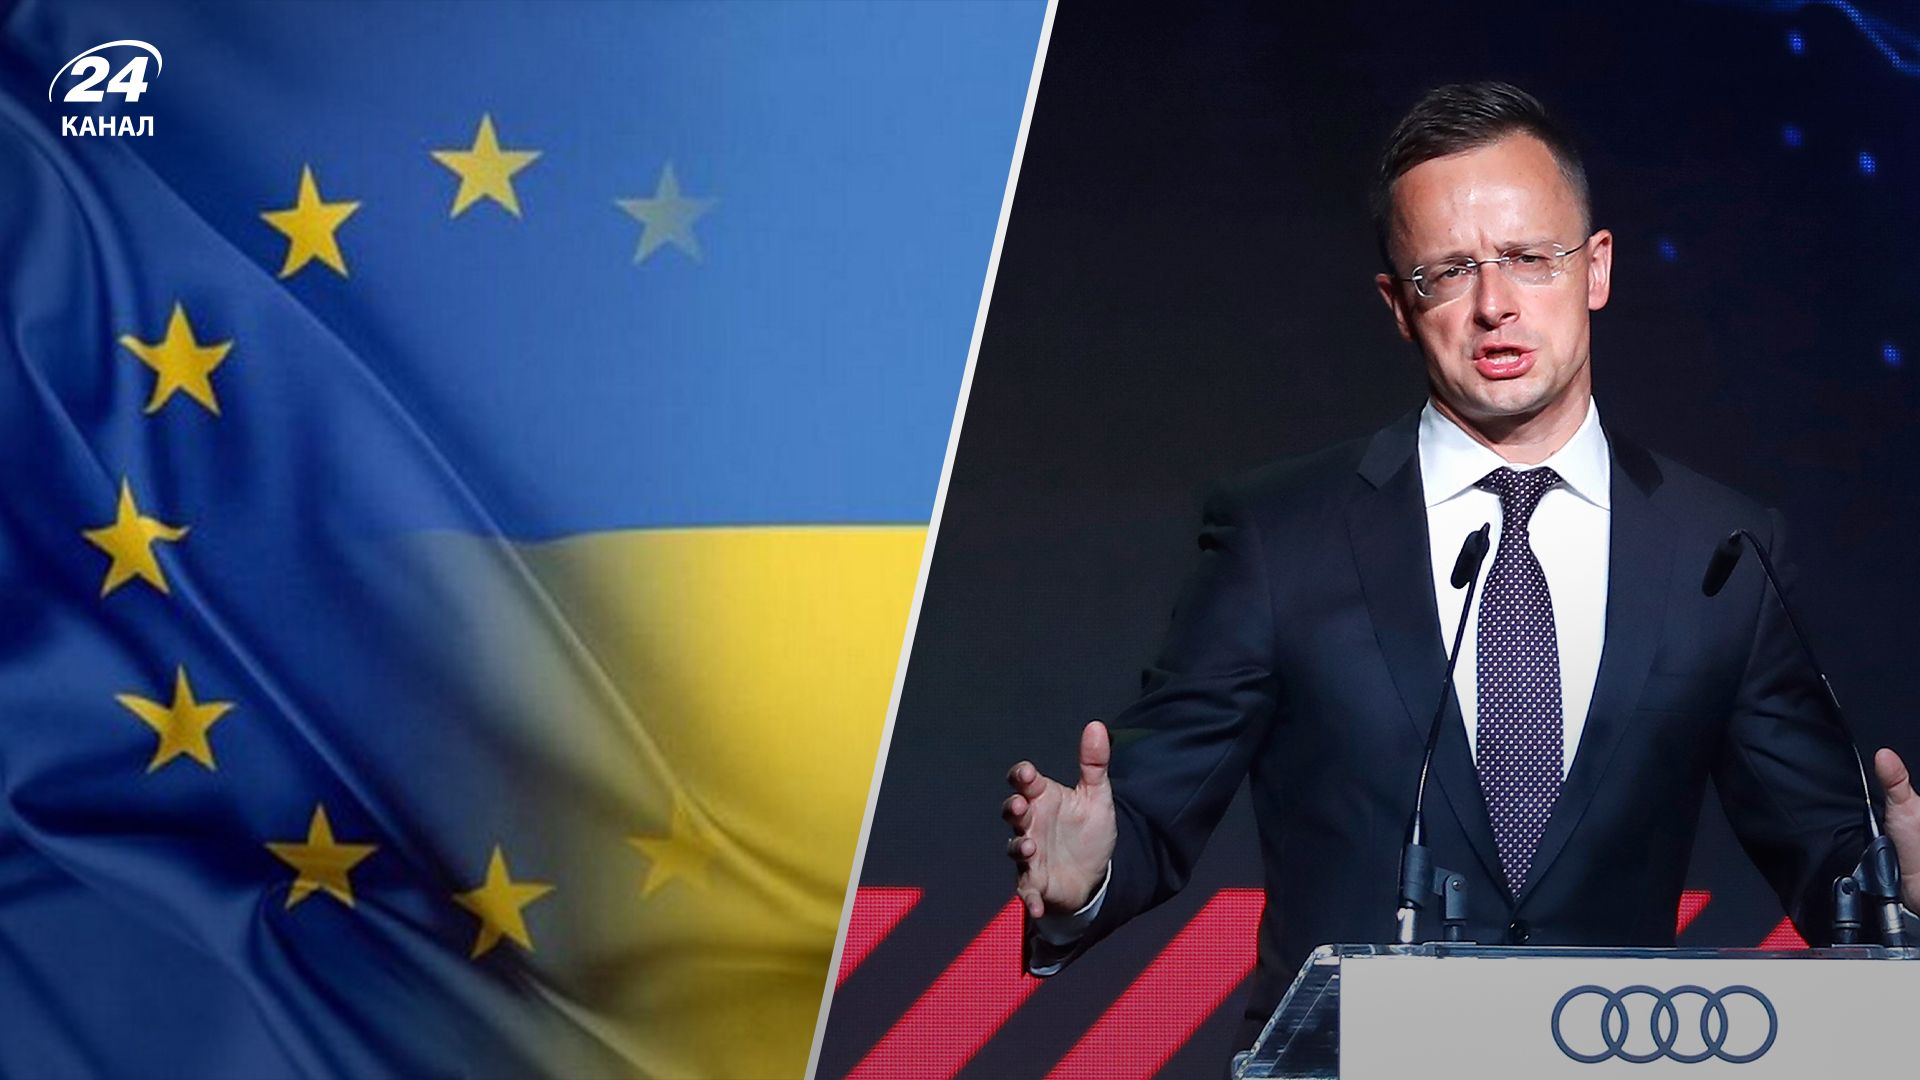 Сіярто пояснив, за якої умови Угорщина готова накласти вето на переговори про вступ України до ЄС